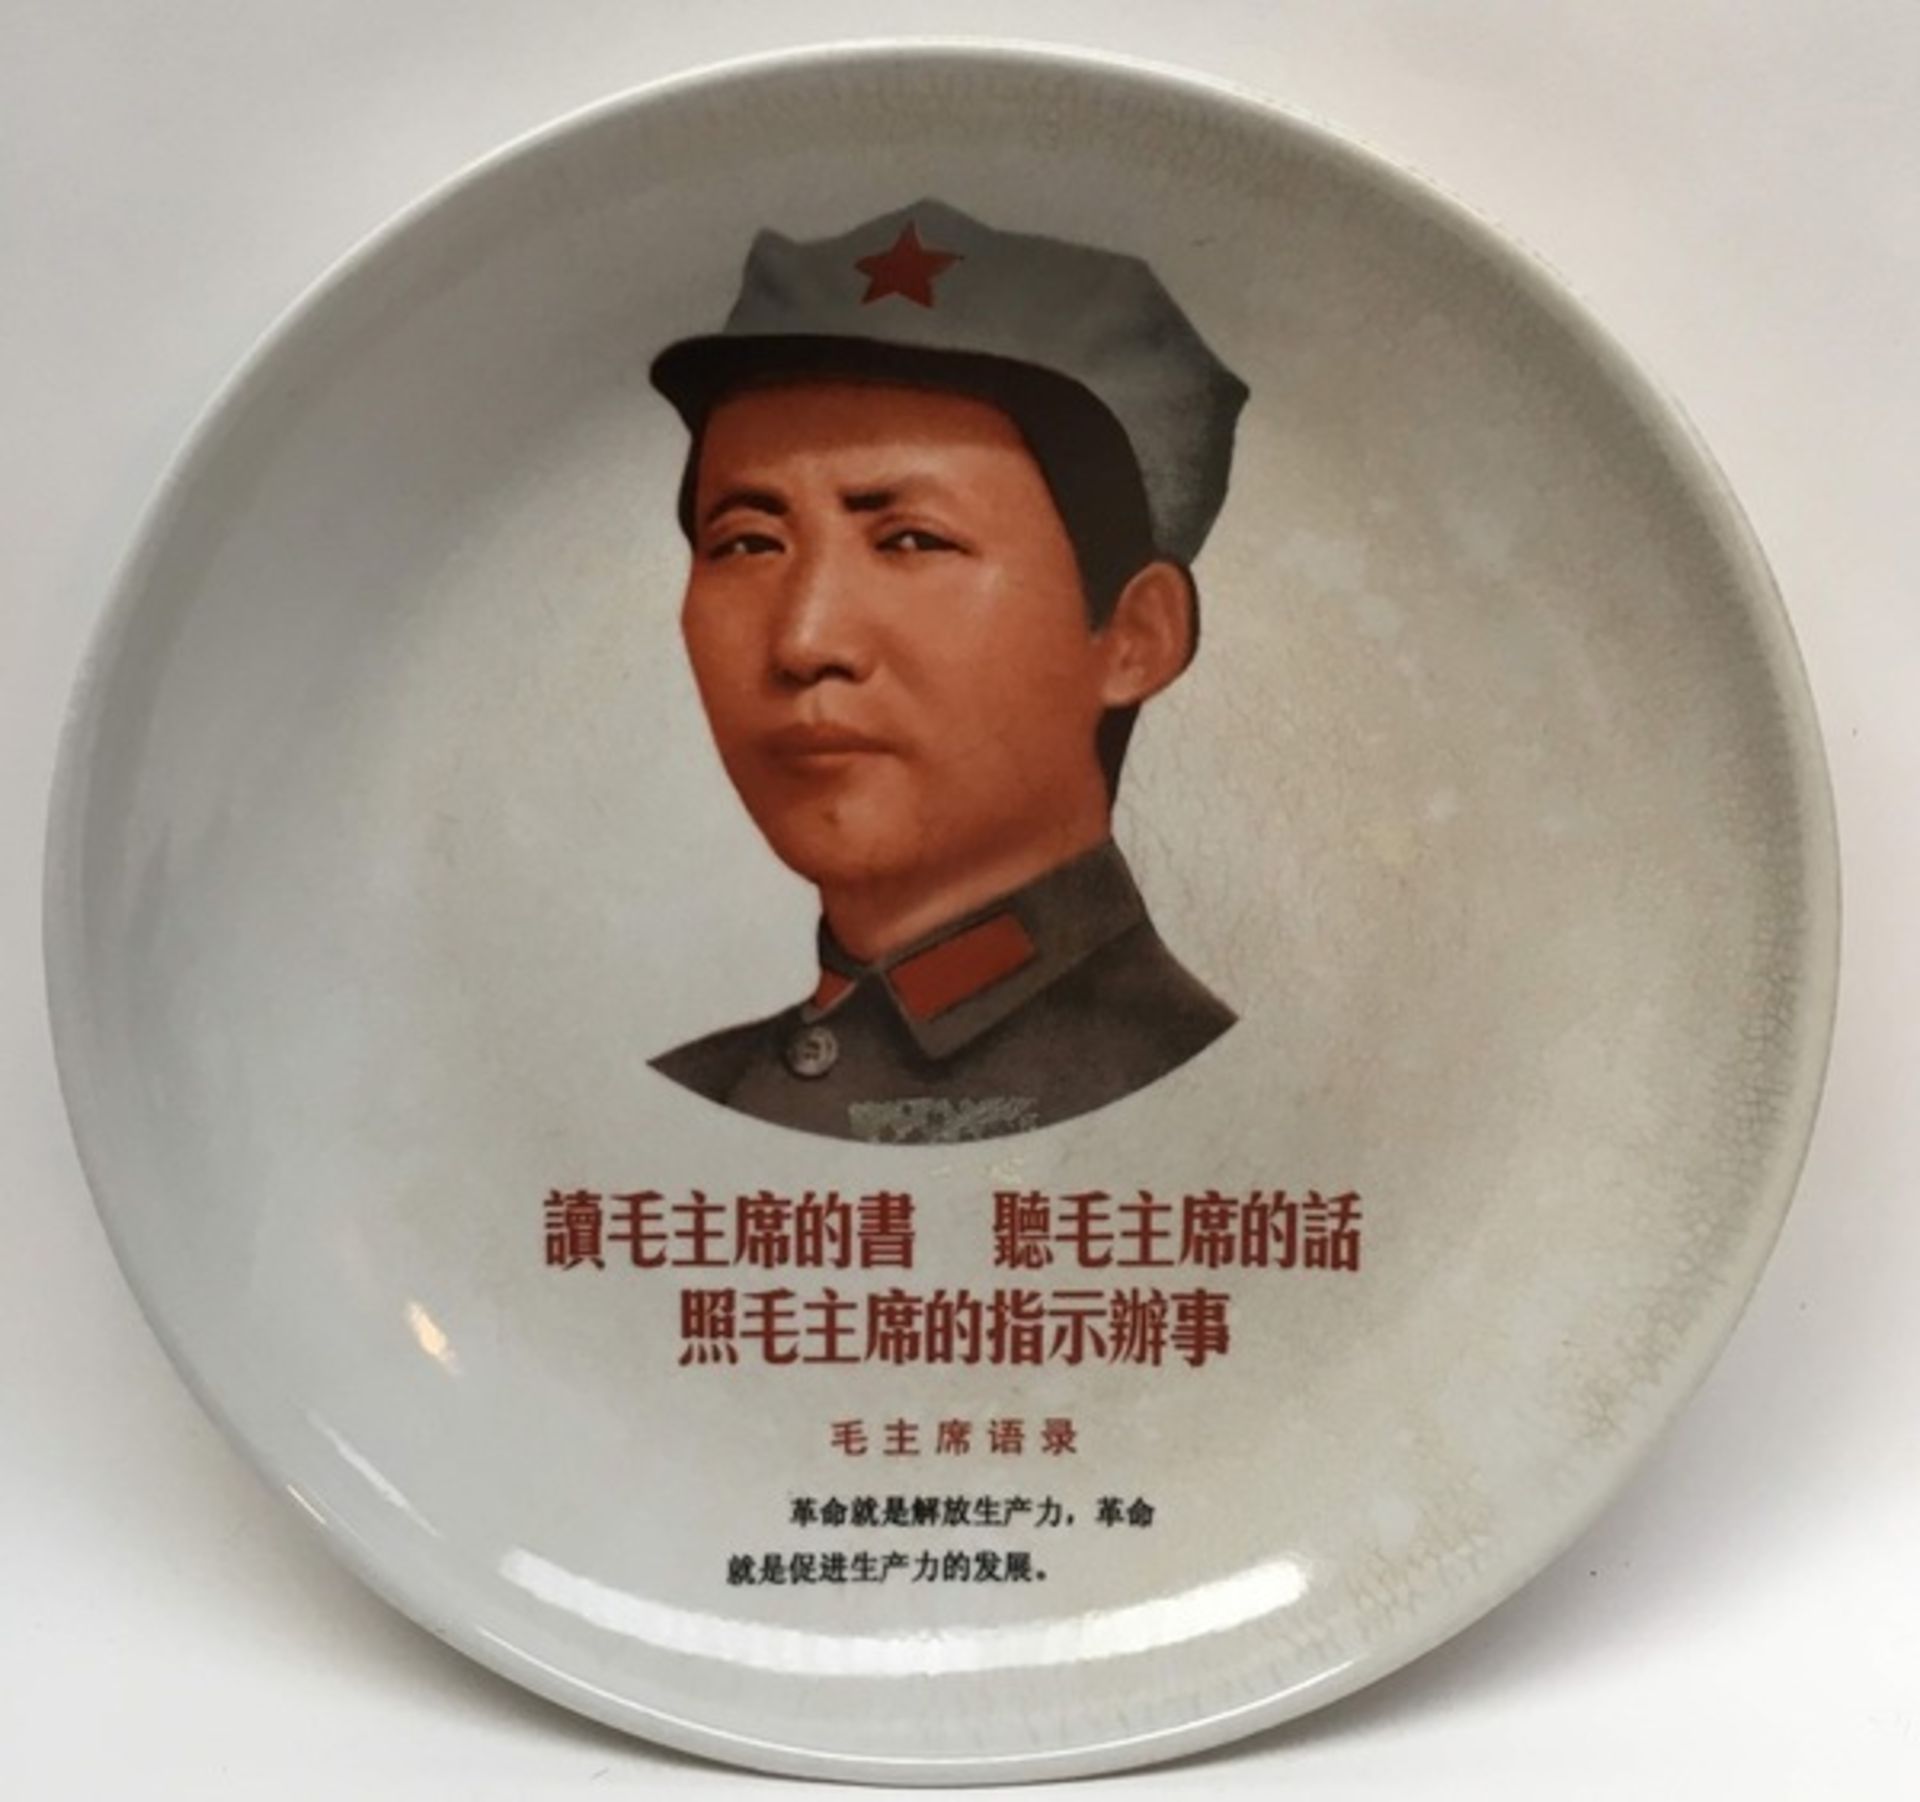 (Curiosa) Aardewerk, bord met voorstelling Chinese culturele revolutie, eind 20e eeuwAardewerk, bord